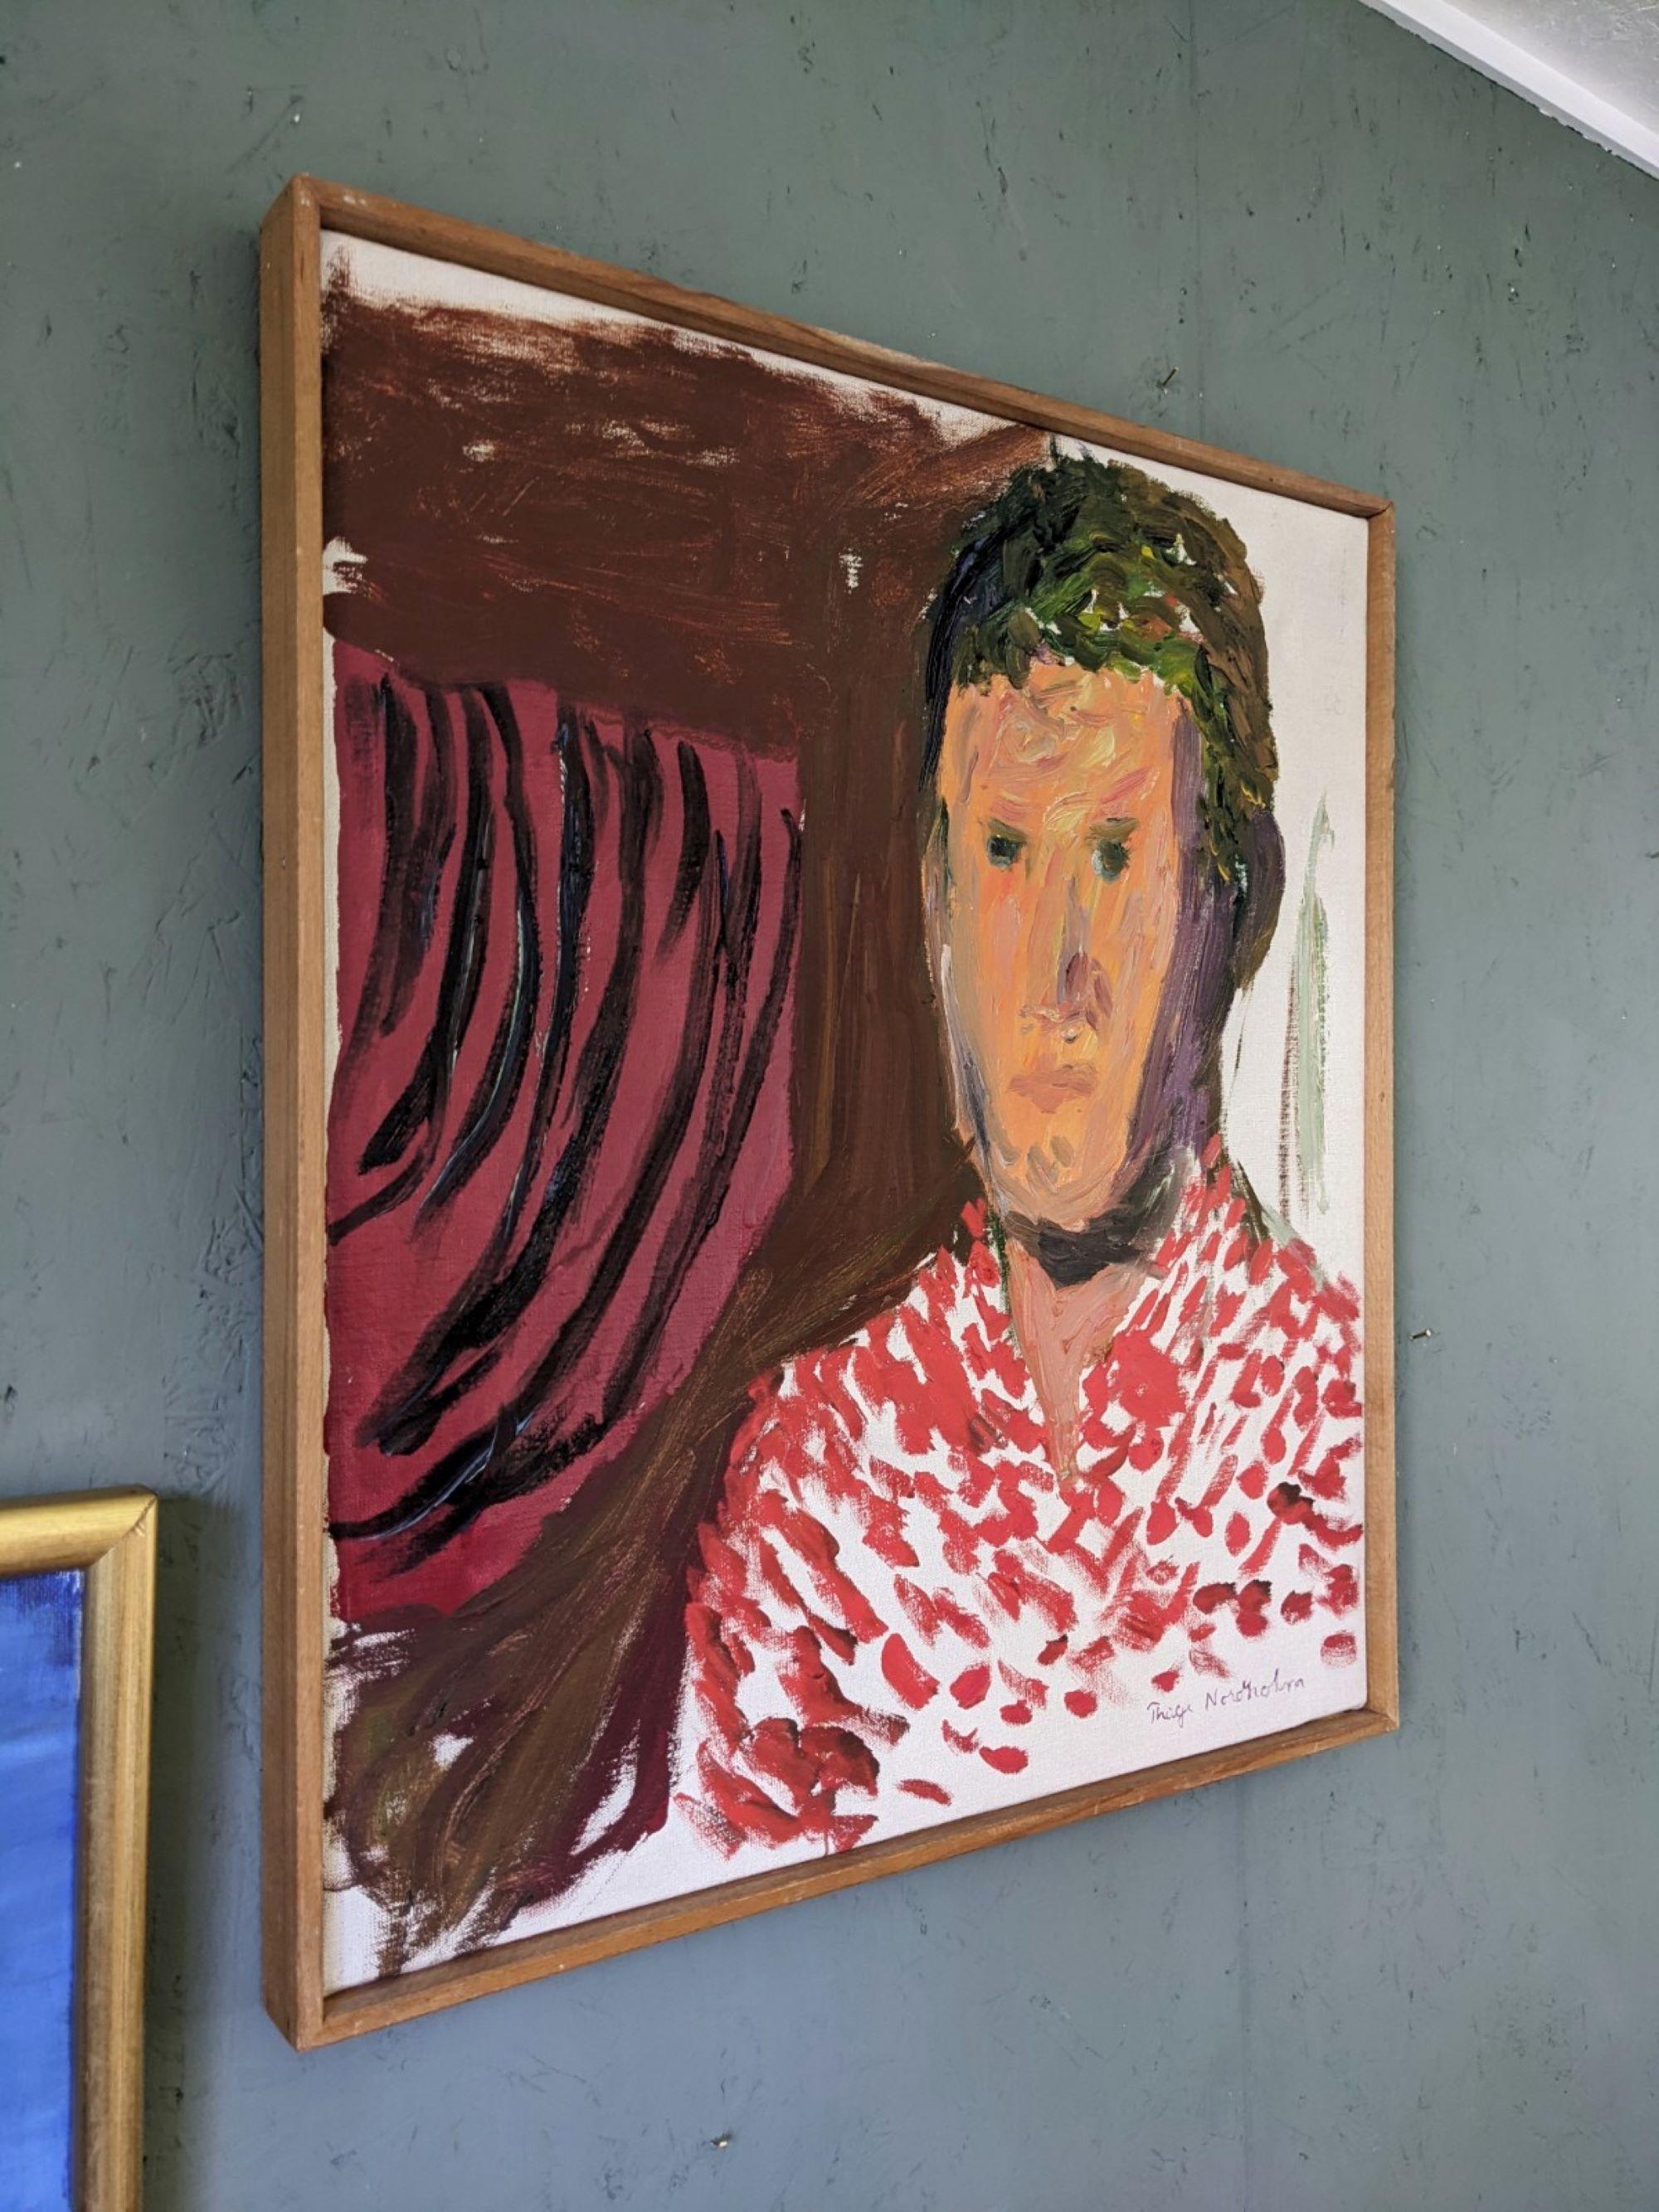 PAUL
Dimensions : 58,5 x 53 cm (cadre compris)
Huile sur toile

Un portrait saisissant et expressif du milieu du siècle, exécuté à l'huile sur toile.

La composition représente un homme vêtu d'une chemise à motifs rouges et blancs qui attire